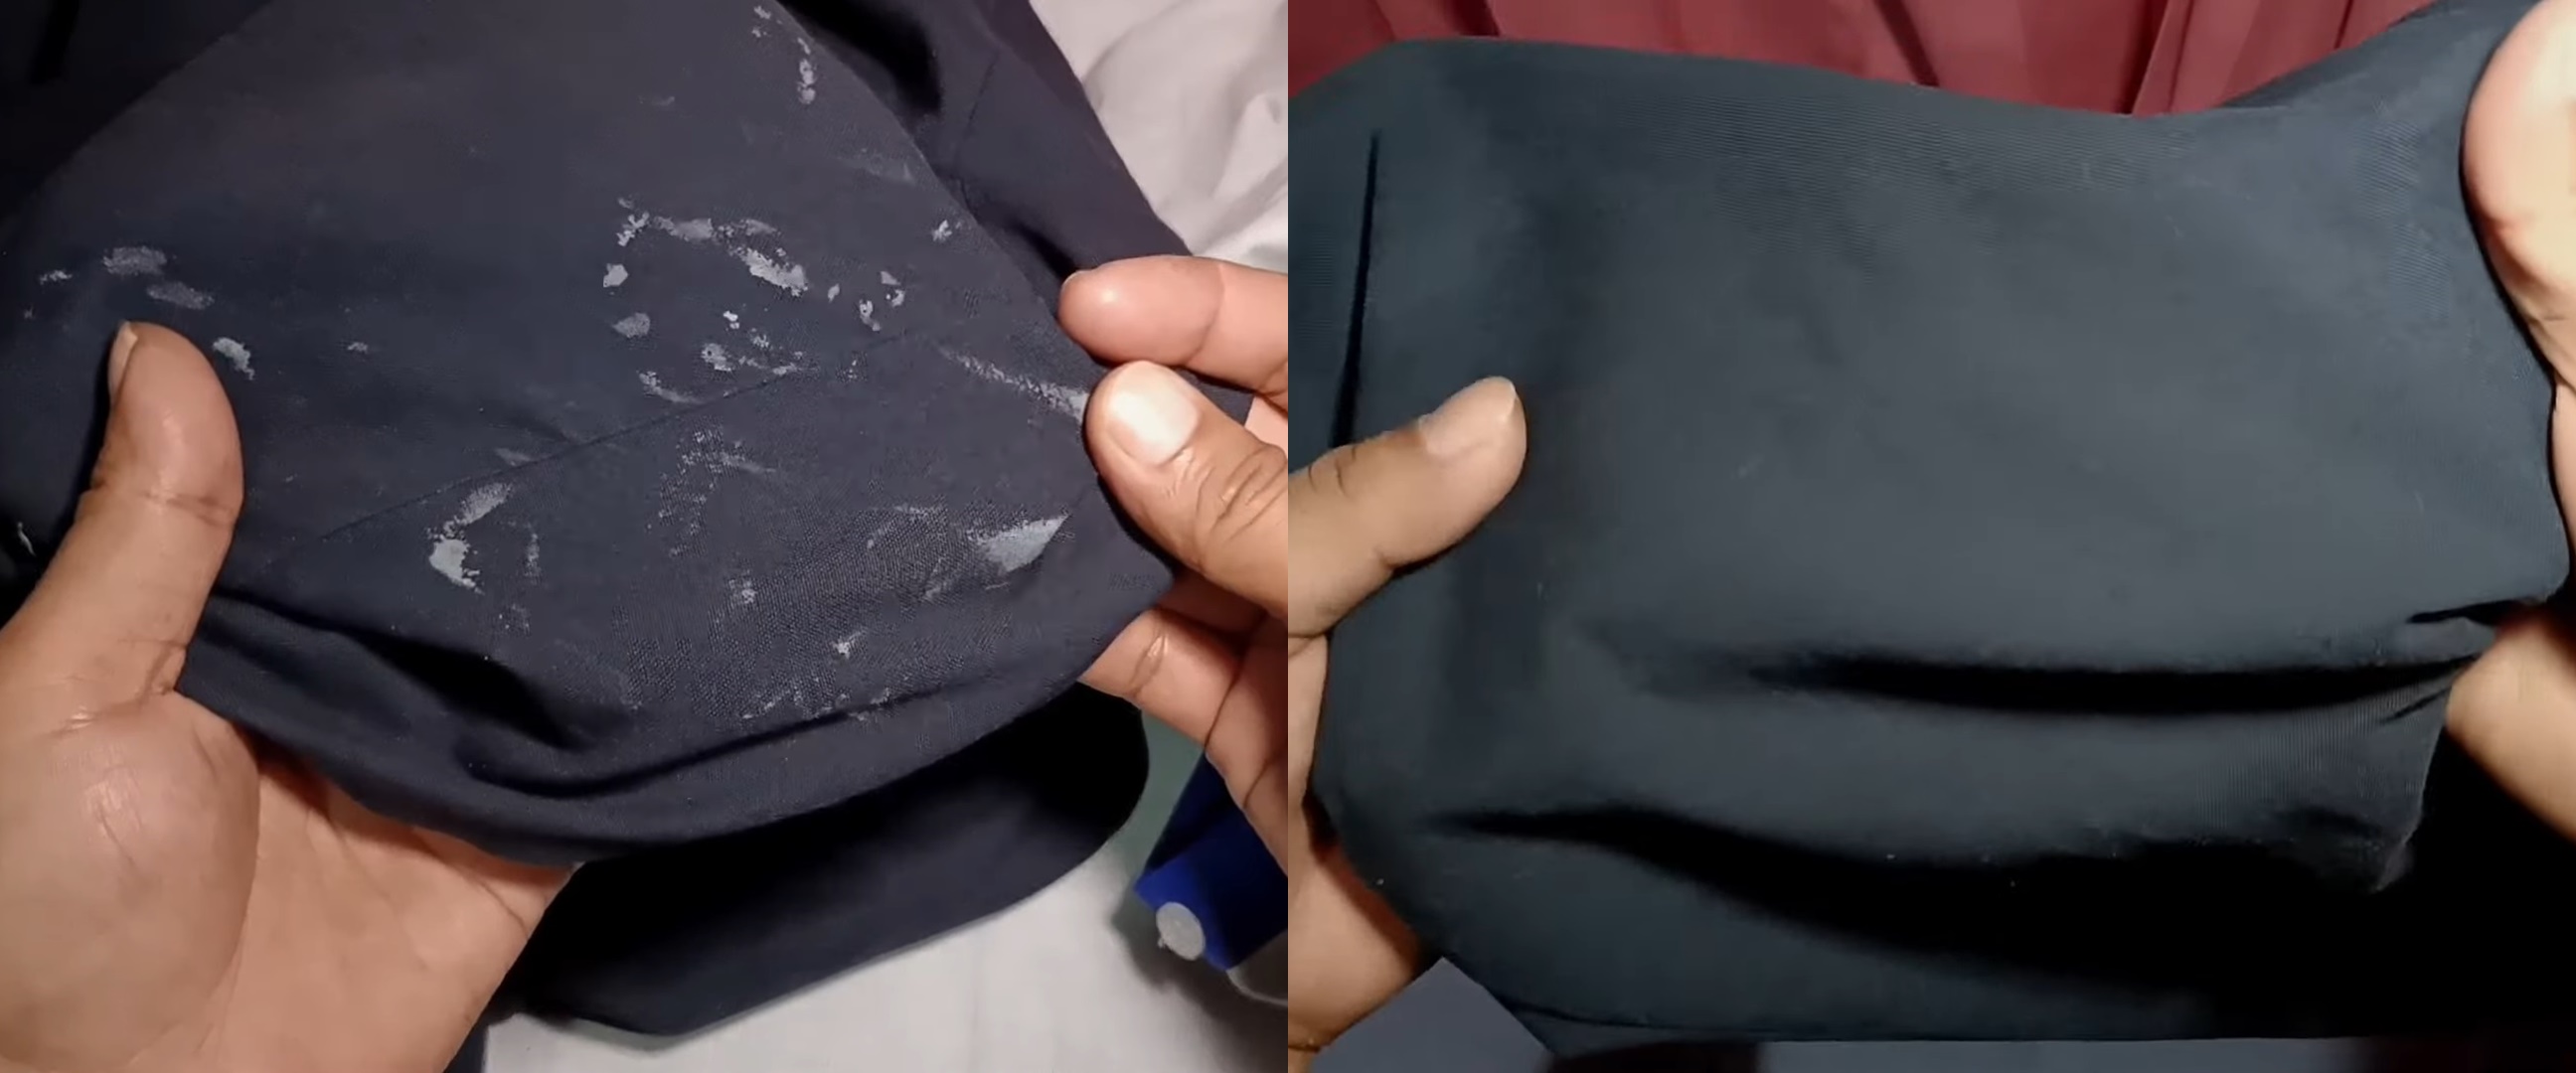 Tanpa pakai detergen, ini cara hilangkan noda bekas cat tembok di pakaian andalkan 1 jenis cairan